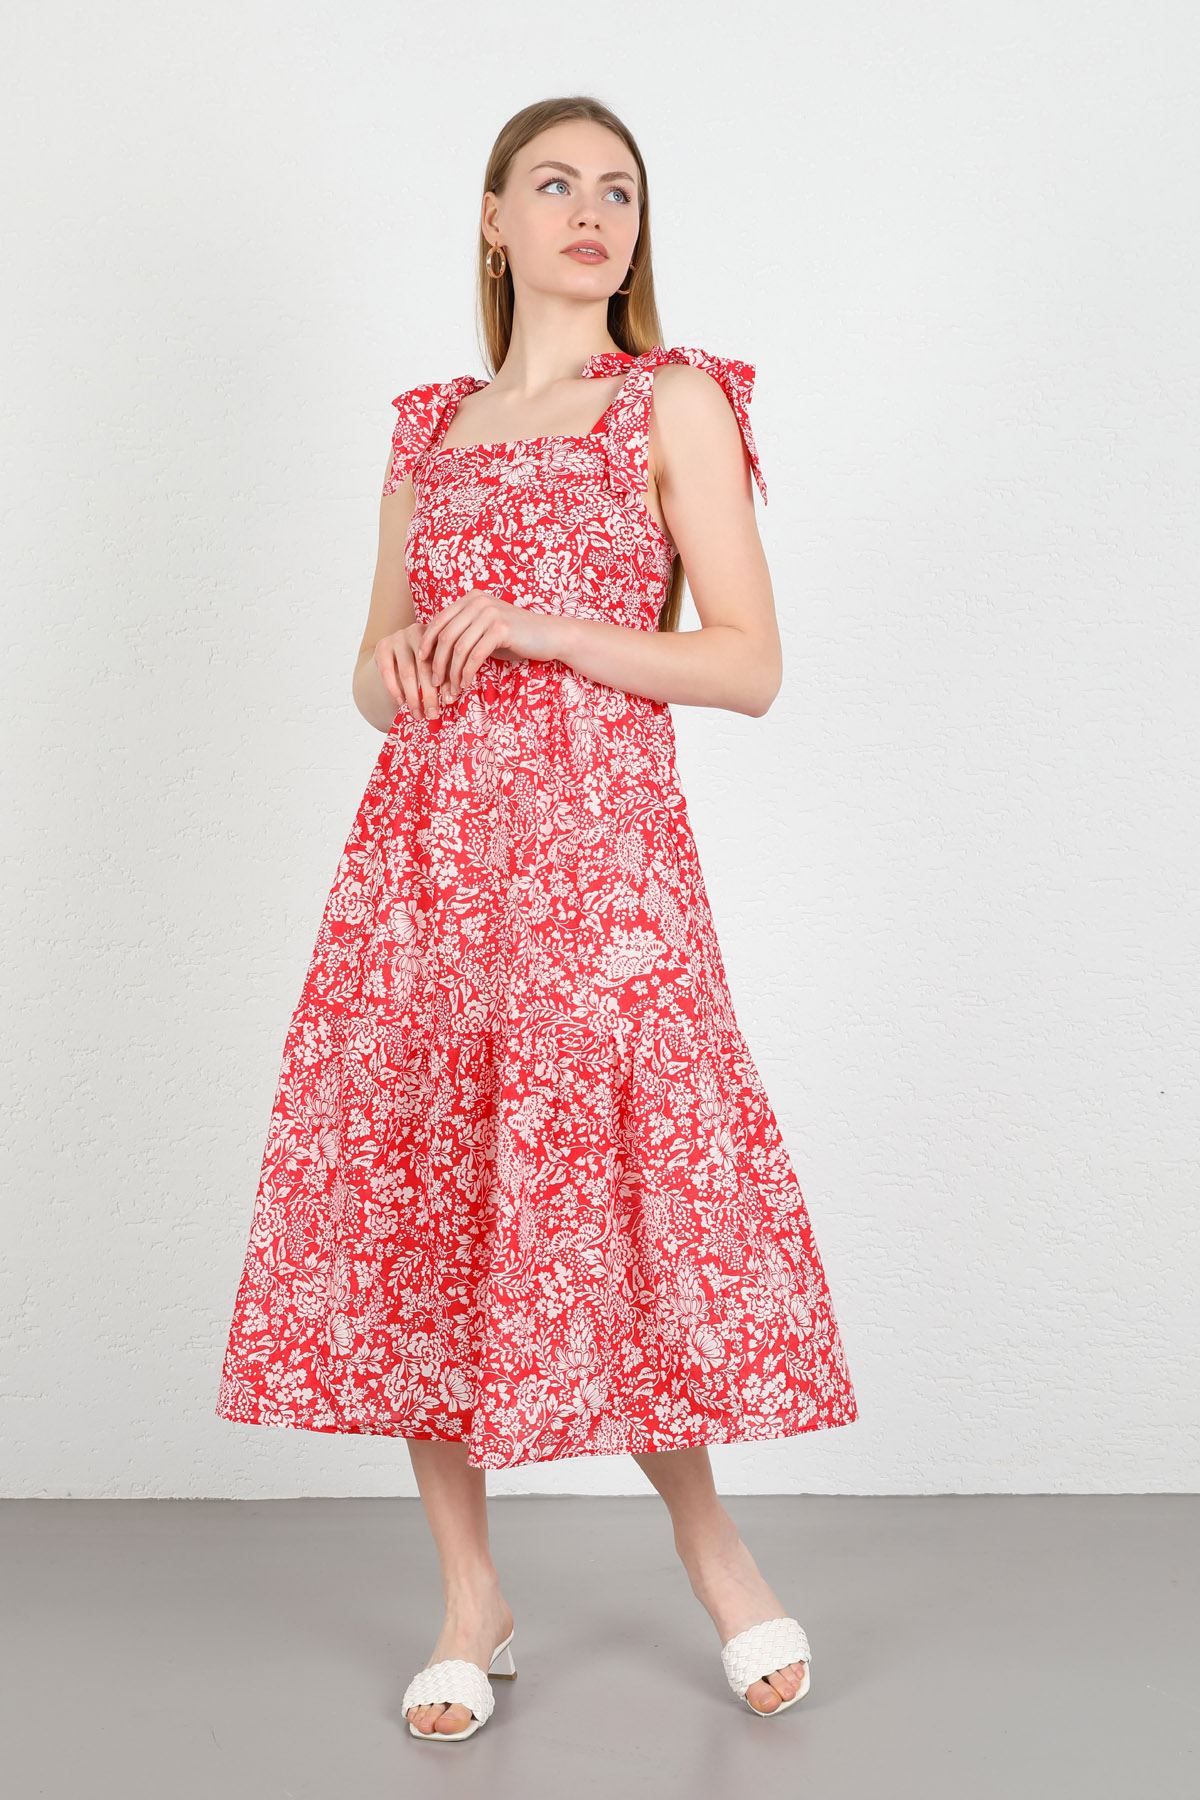 Вуаль Ткань Квадратная шея цветочный принтженское платье до колен - Kрасный